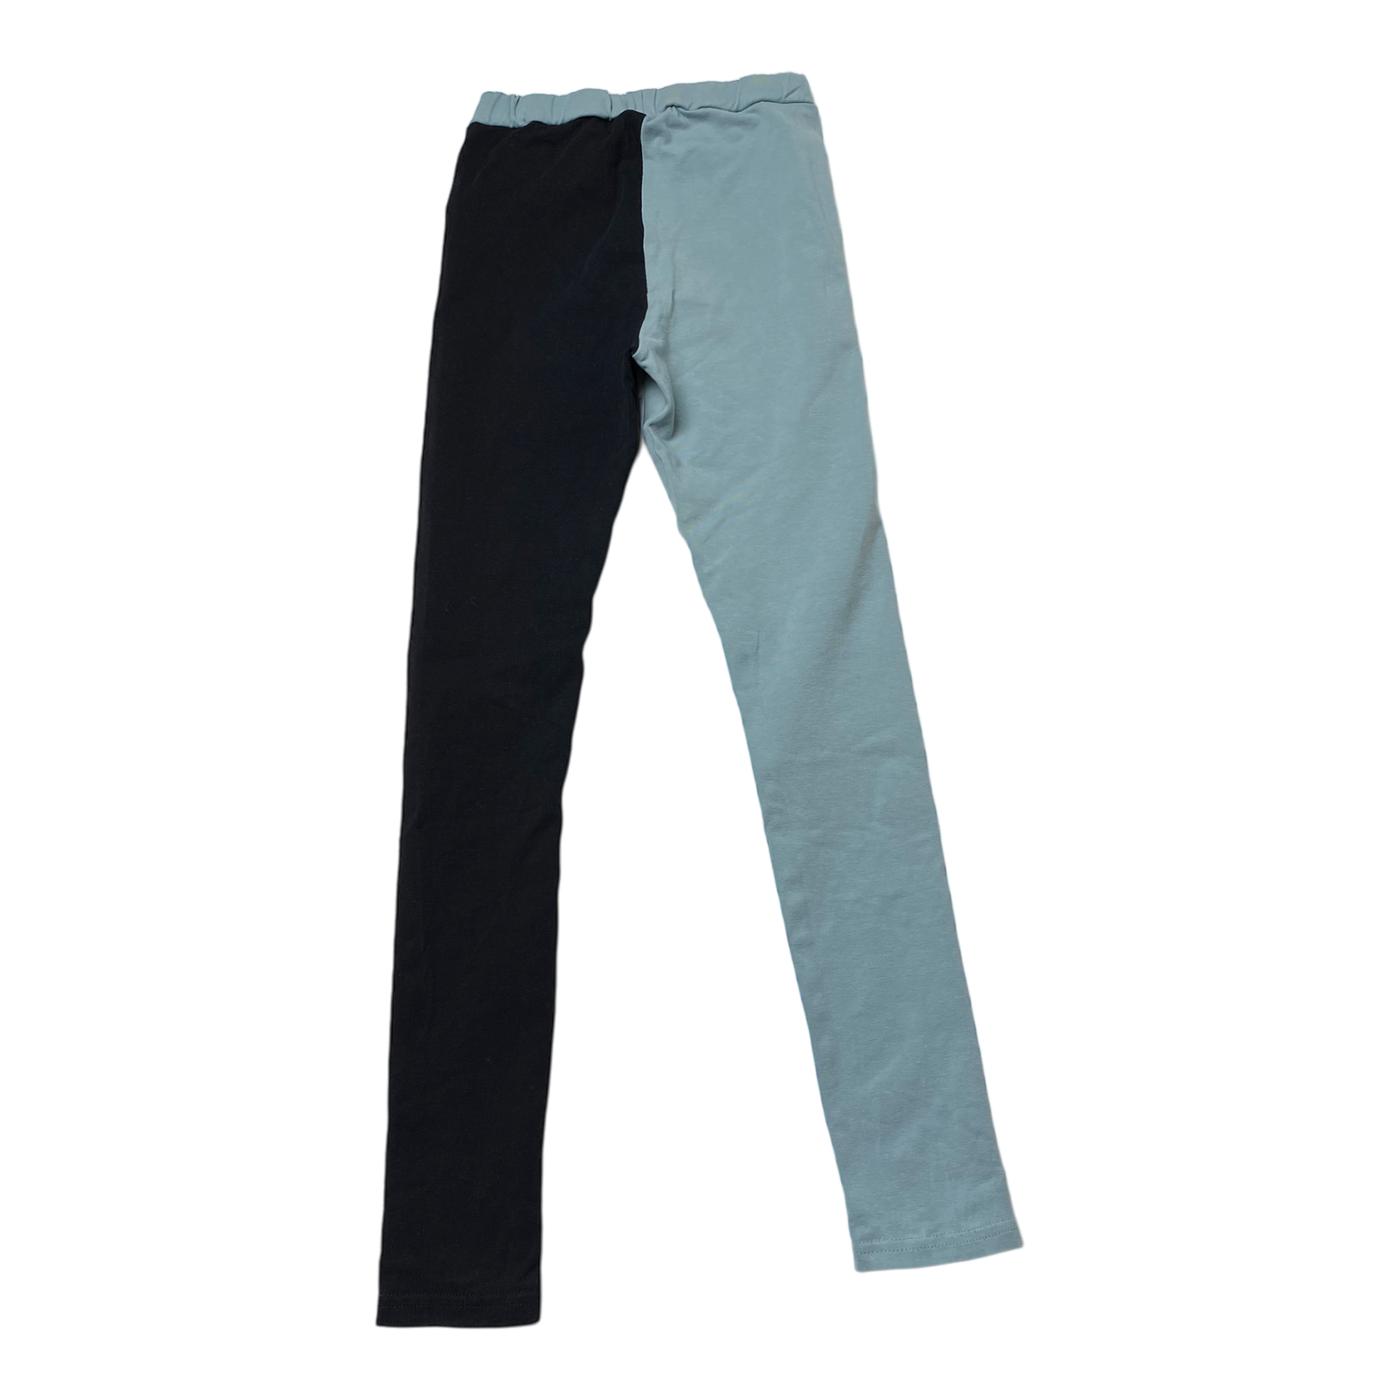 Gugguu leggings, black & turquoise | 122cm